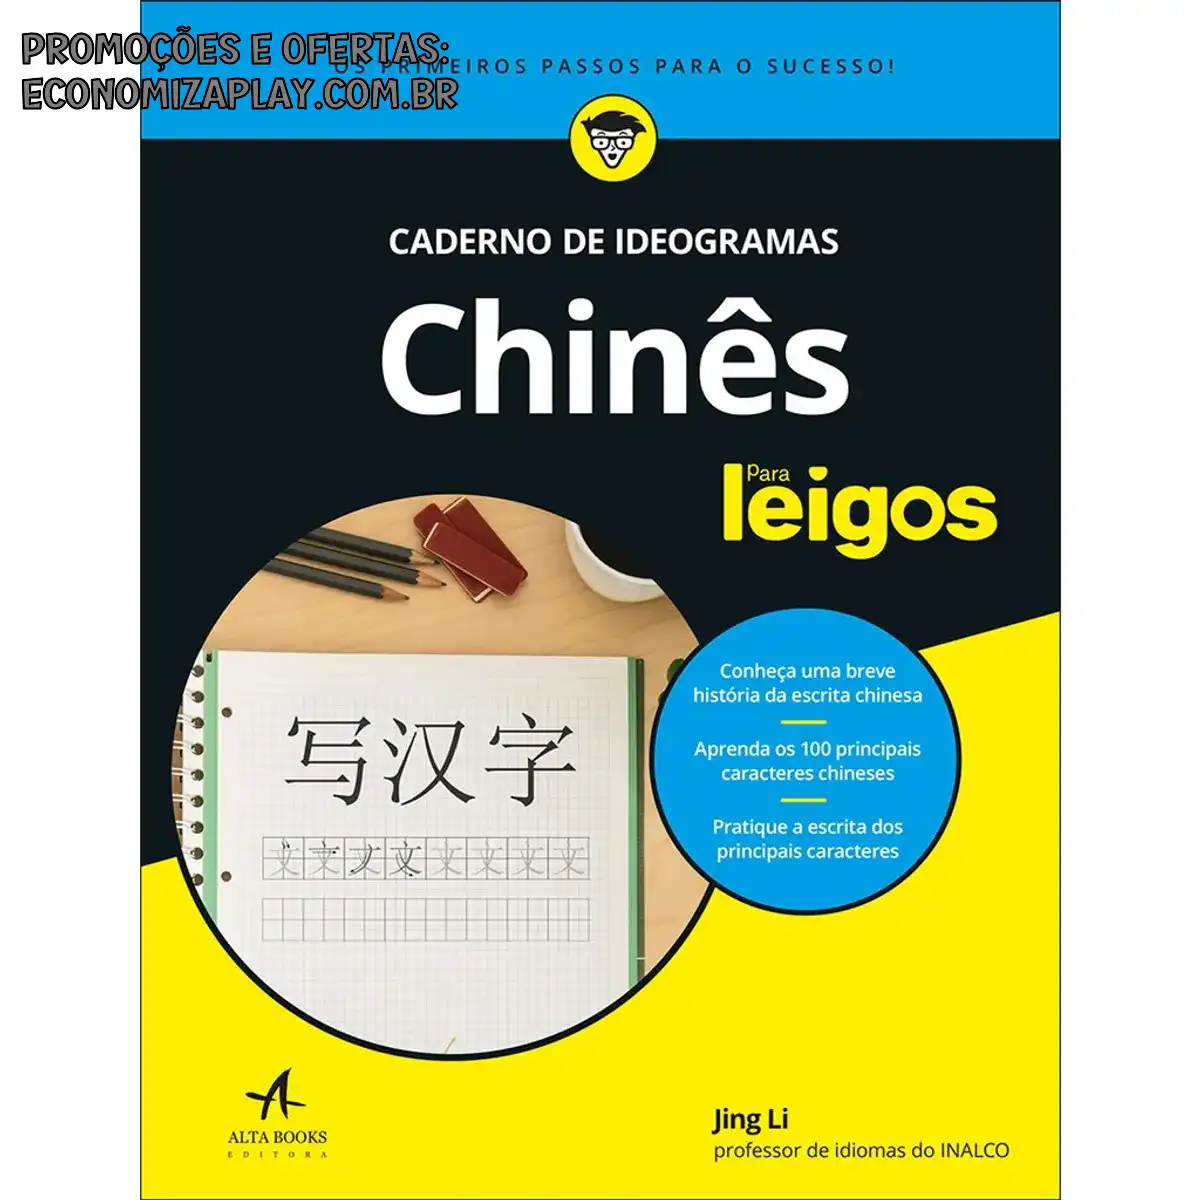 Chinês para leigos caderno de ideogramas